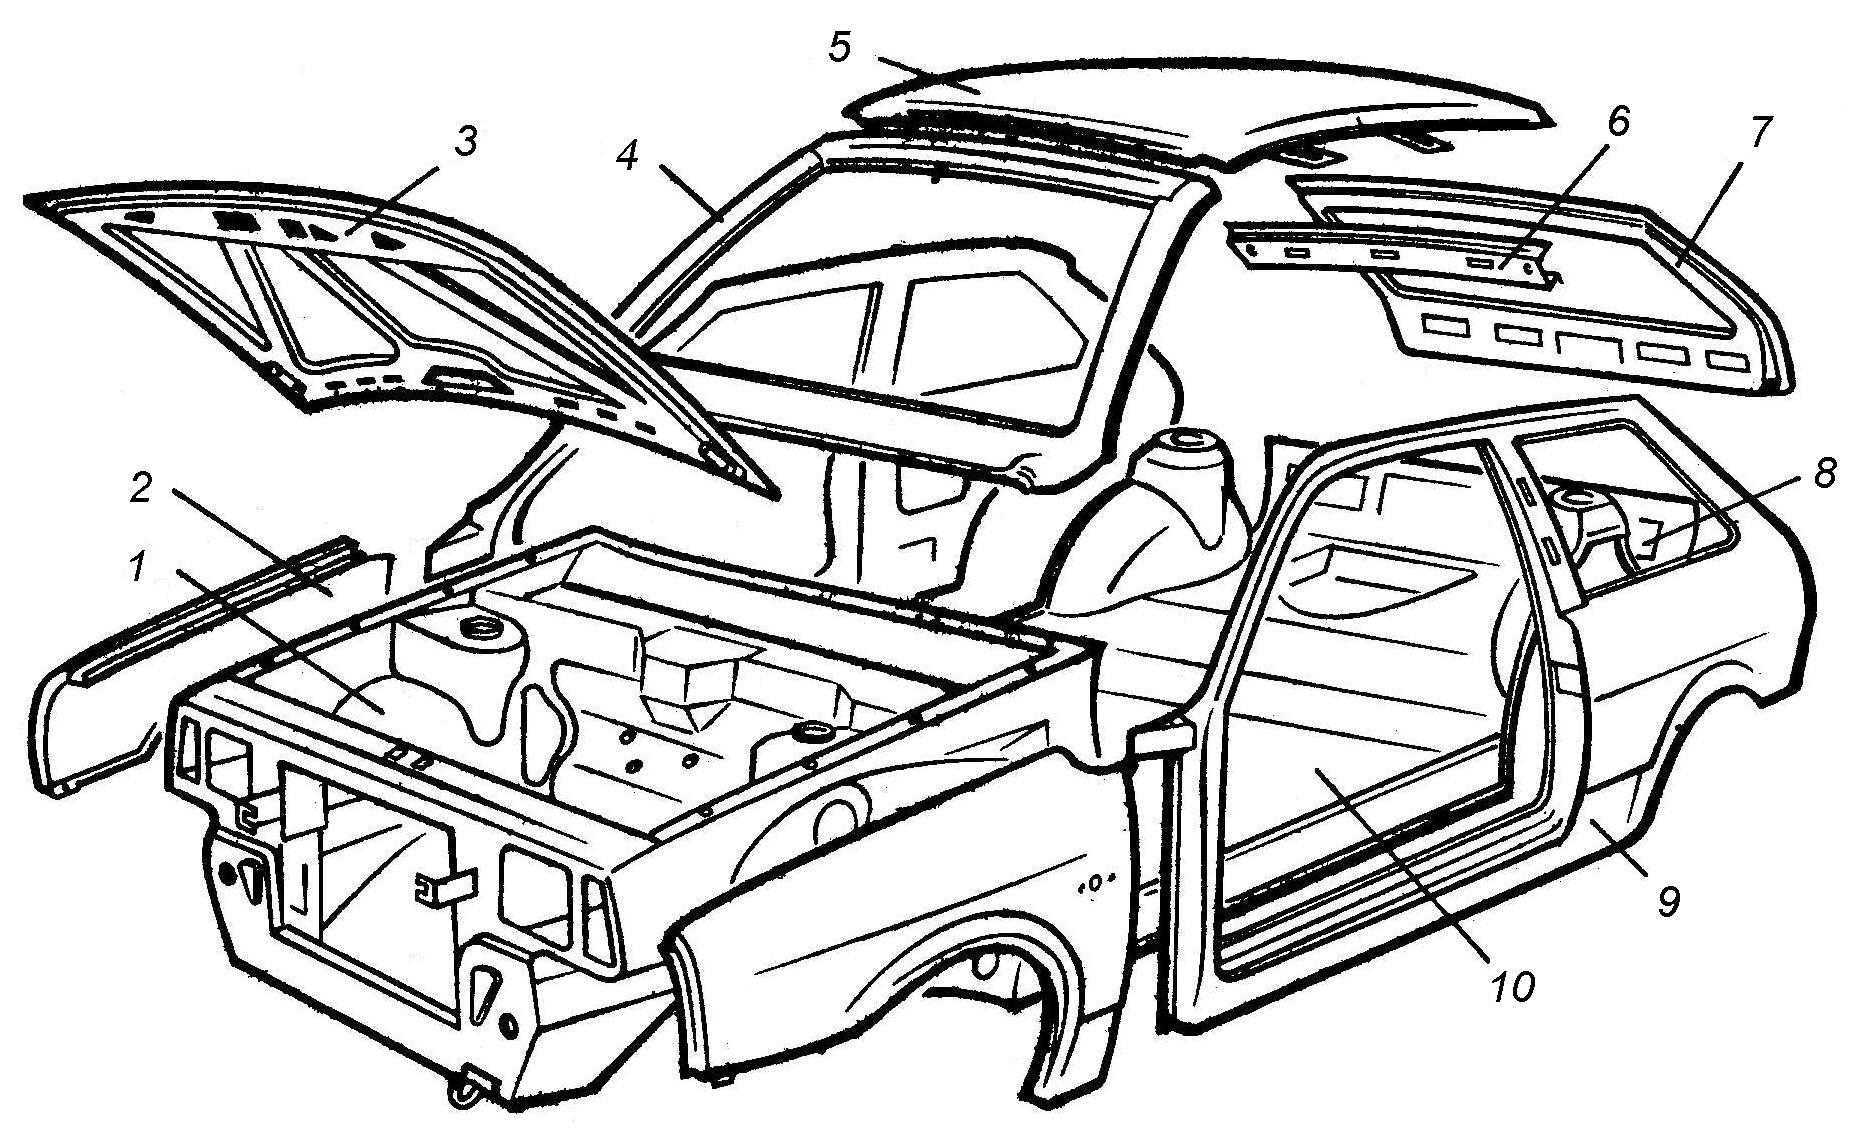 Кузовные запчасти — описание деталей кузова автомобиля и основных частей машины